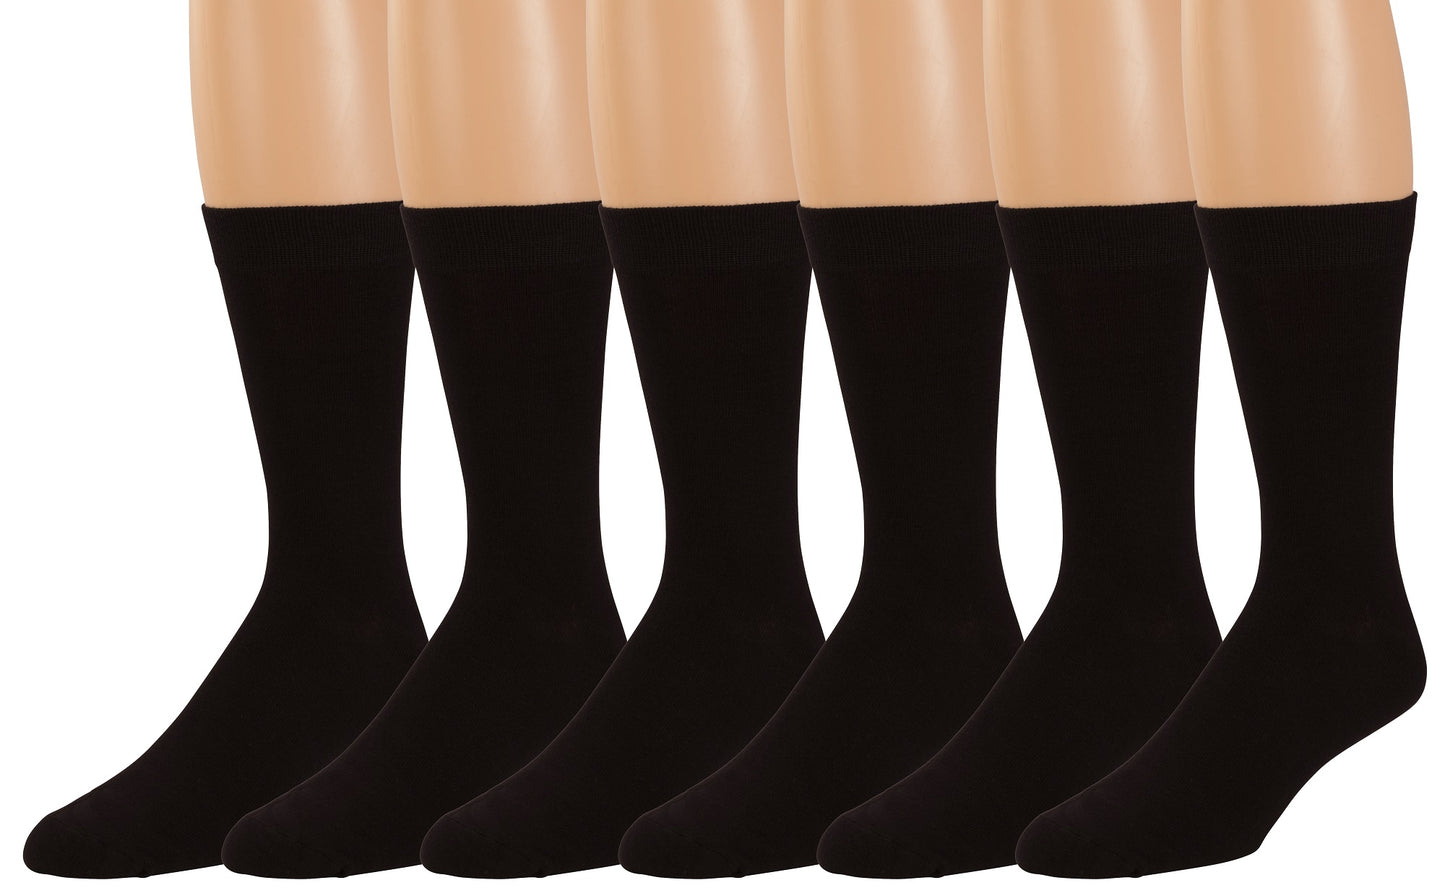 No Nonsense Soft And Breathable Women's Mini Crew Socks, Black, Size 4 –  Vitabox